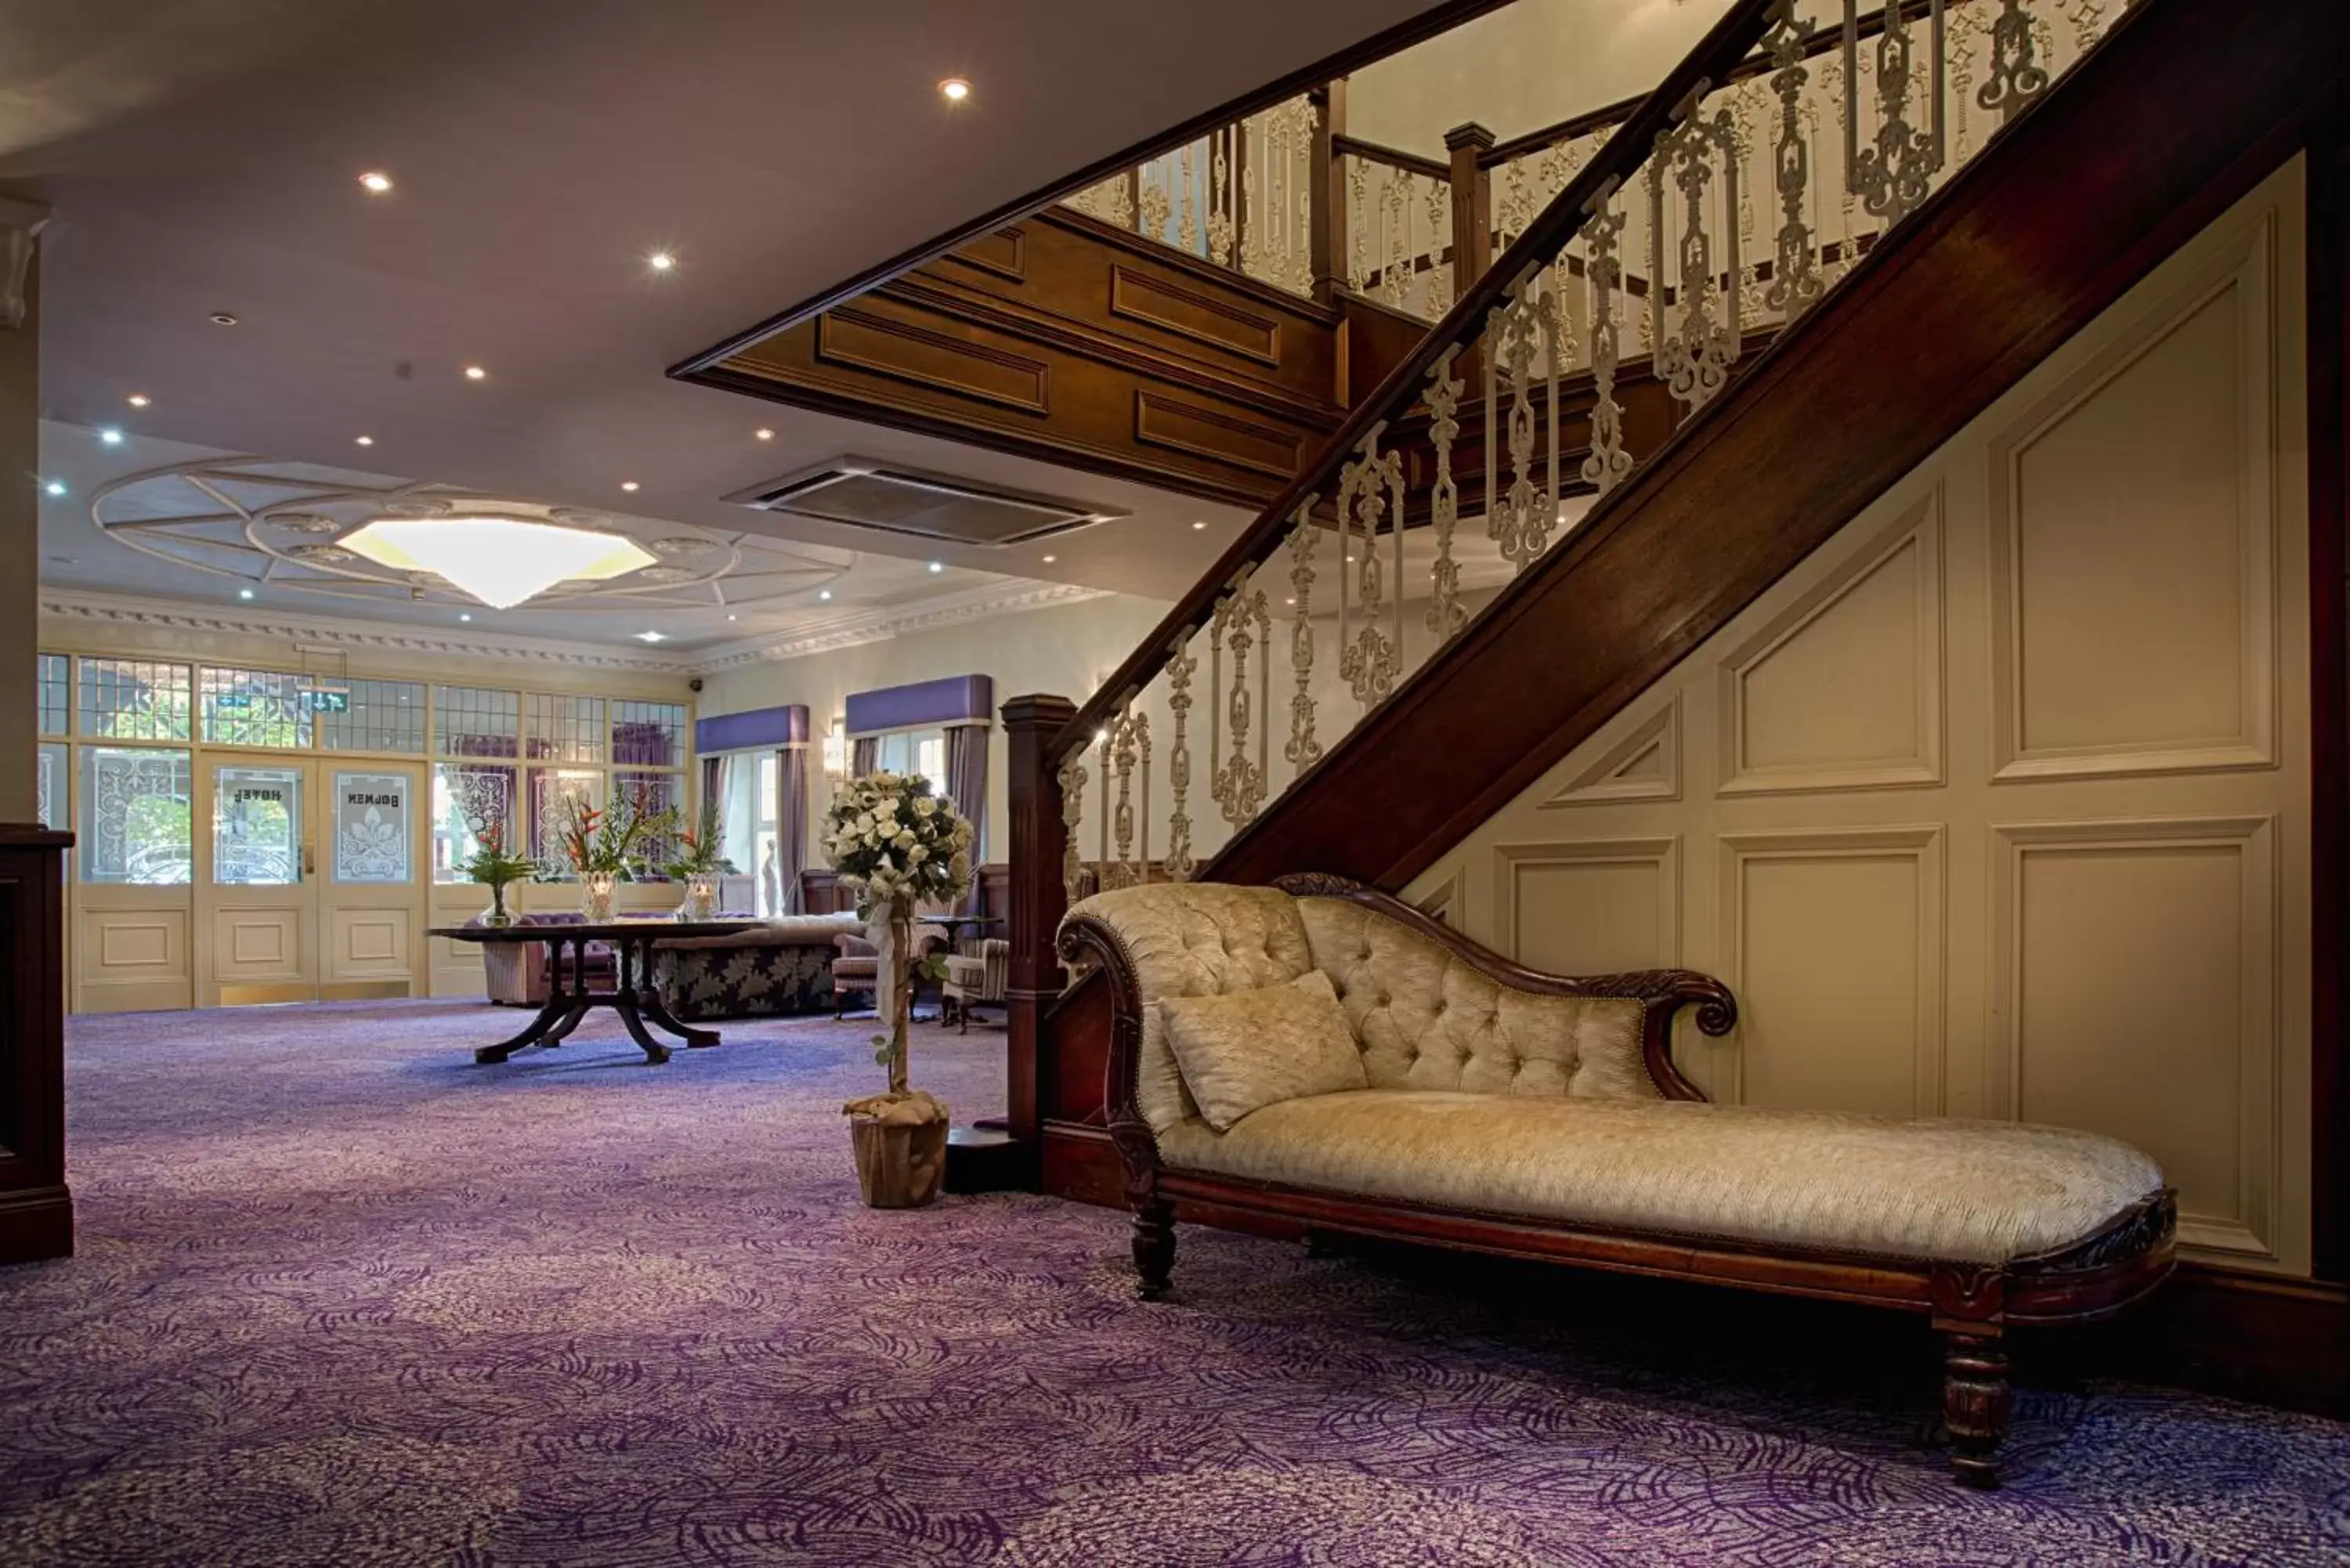 Lobby or reception in Woodford Dolmen Hotel Carlow